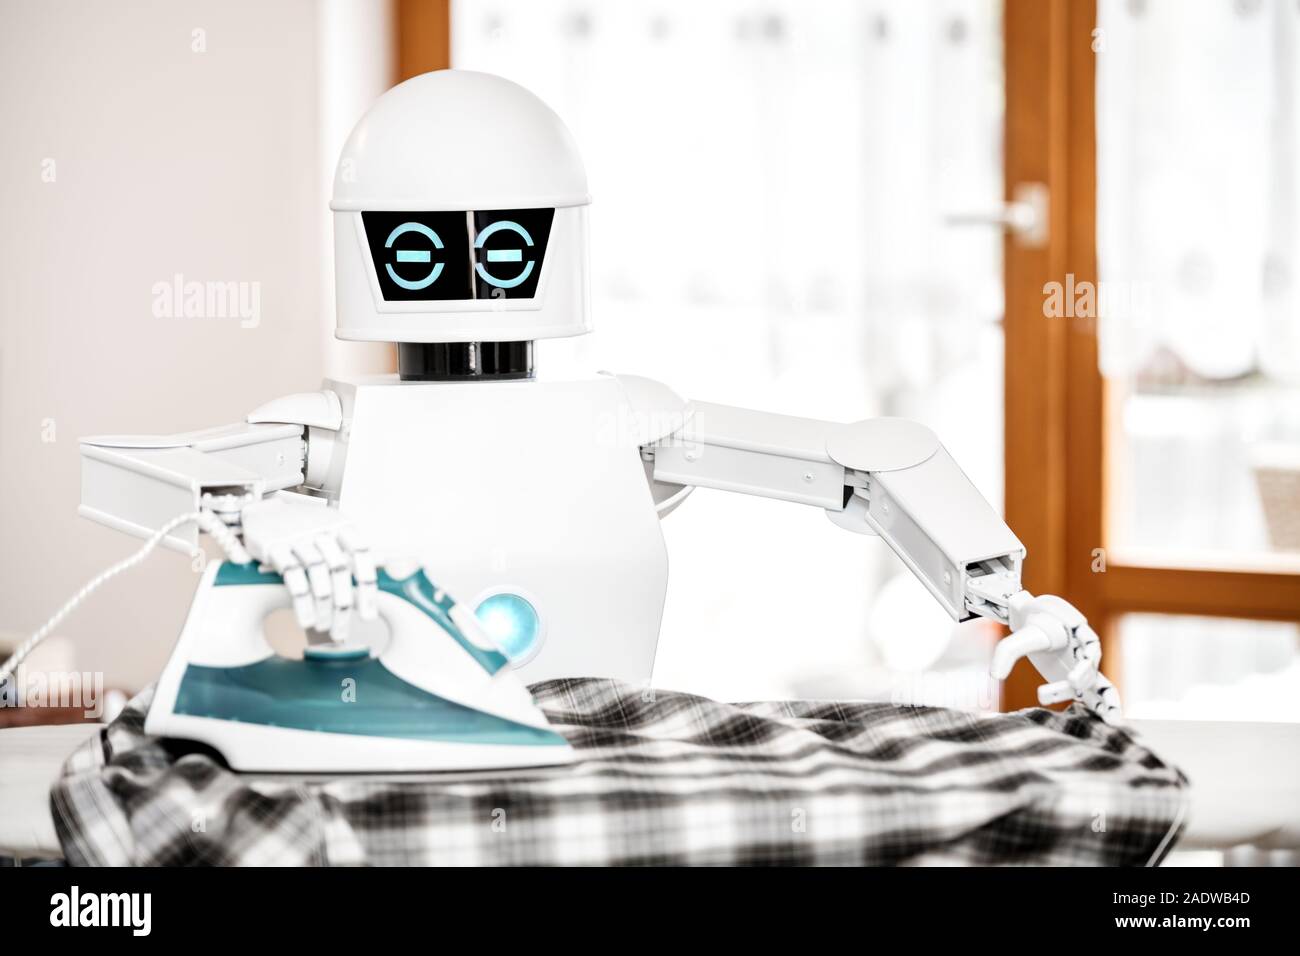 Effie, un robot-repasseur connecté qui parfume le linge - Les Numériques